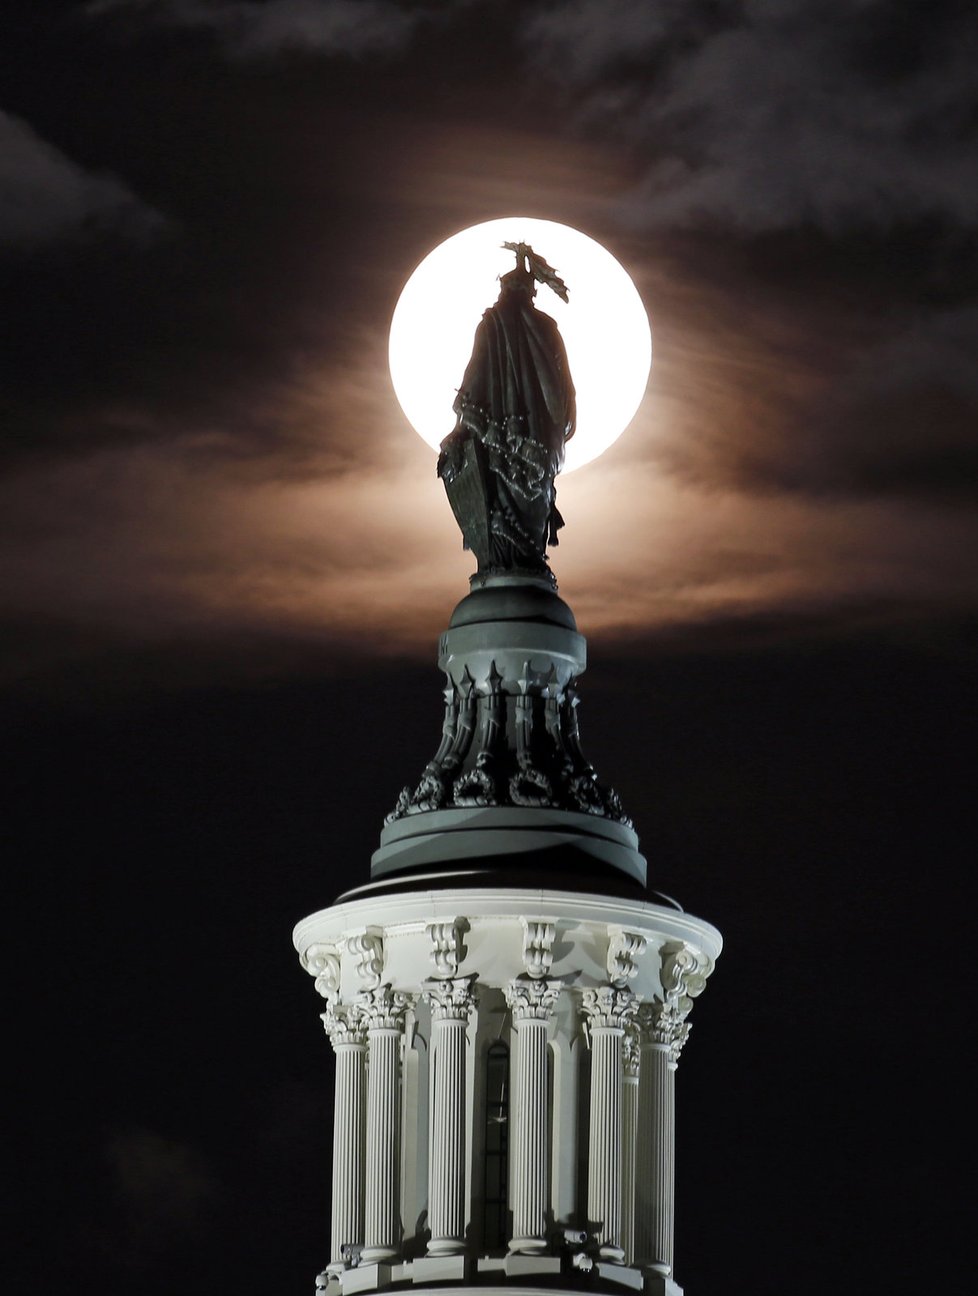 Měsíc ozářil Sochu svobody na vrcholu Kapitolu ve Washingtonu